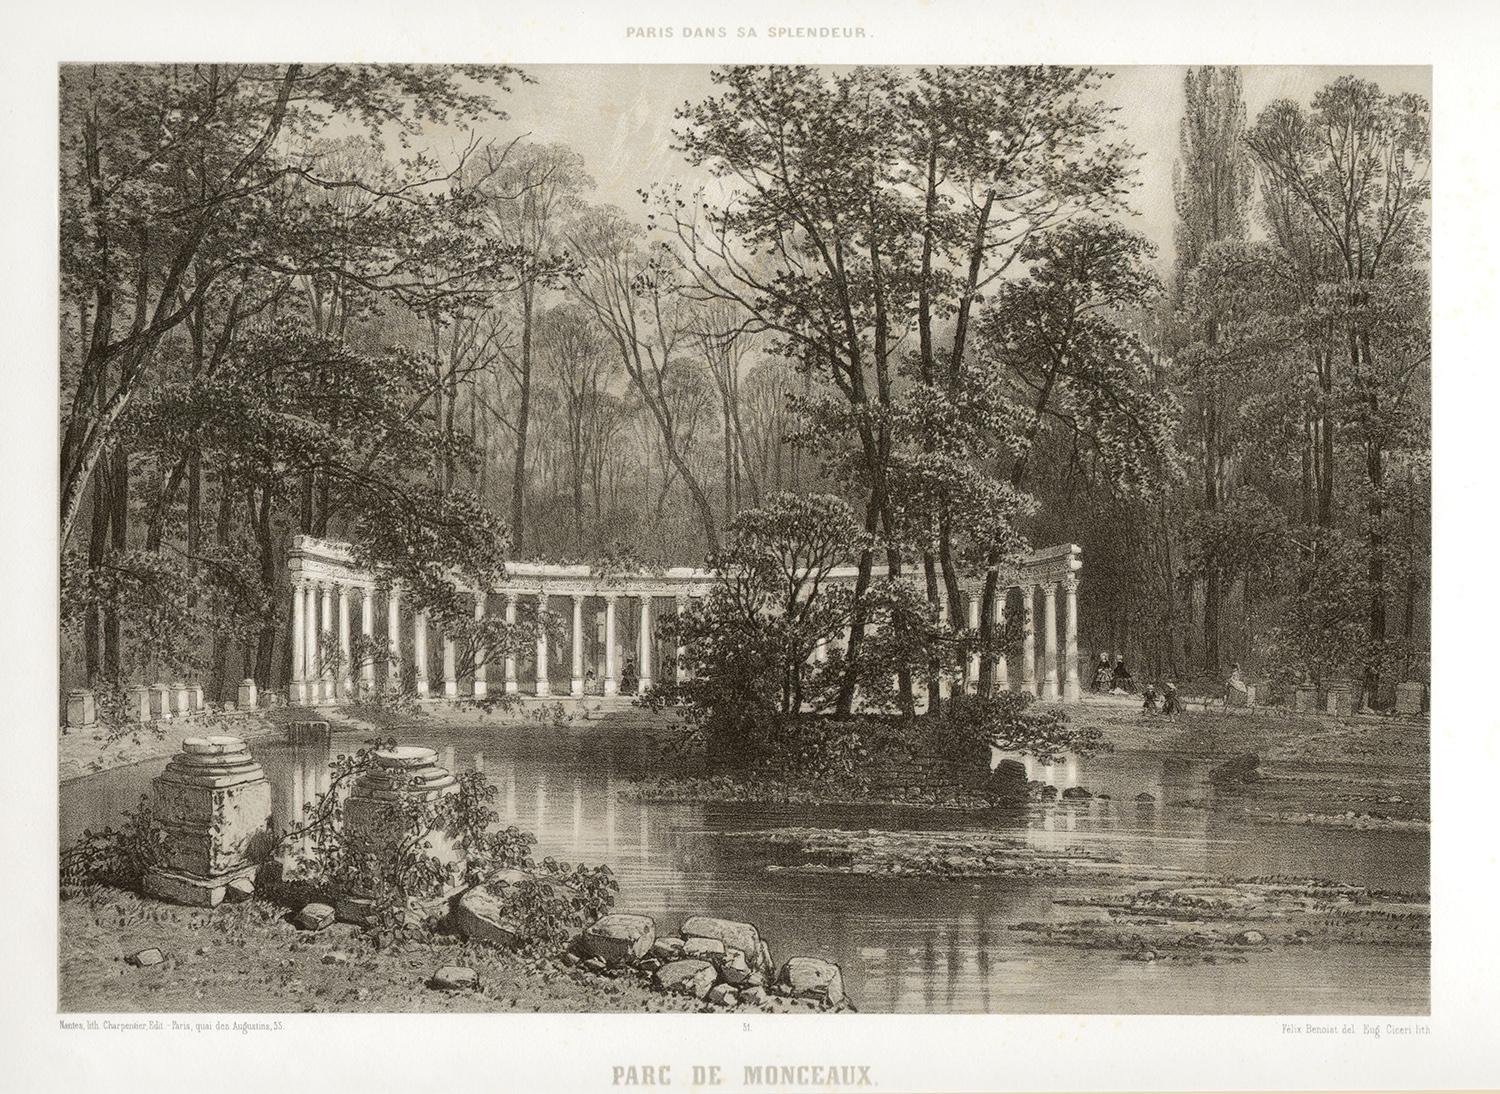 Paris - Parc de Monceaux, French lithograph, 1861